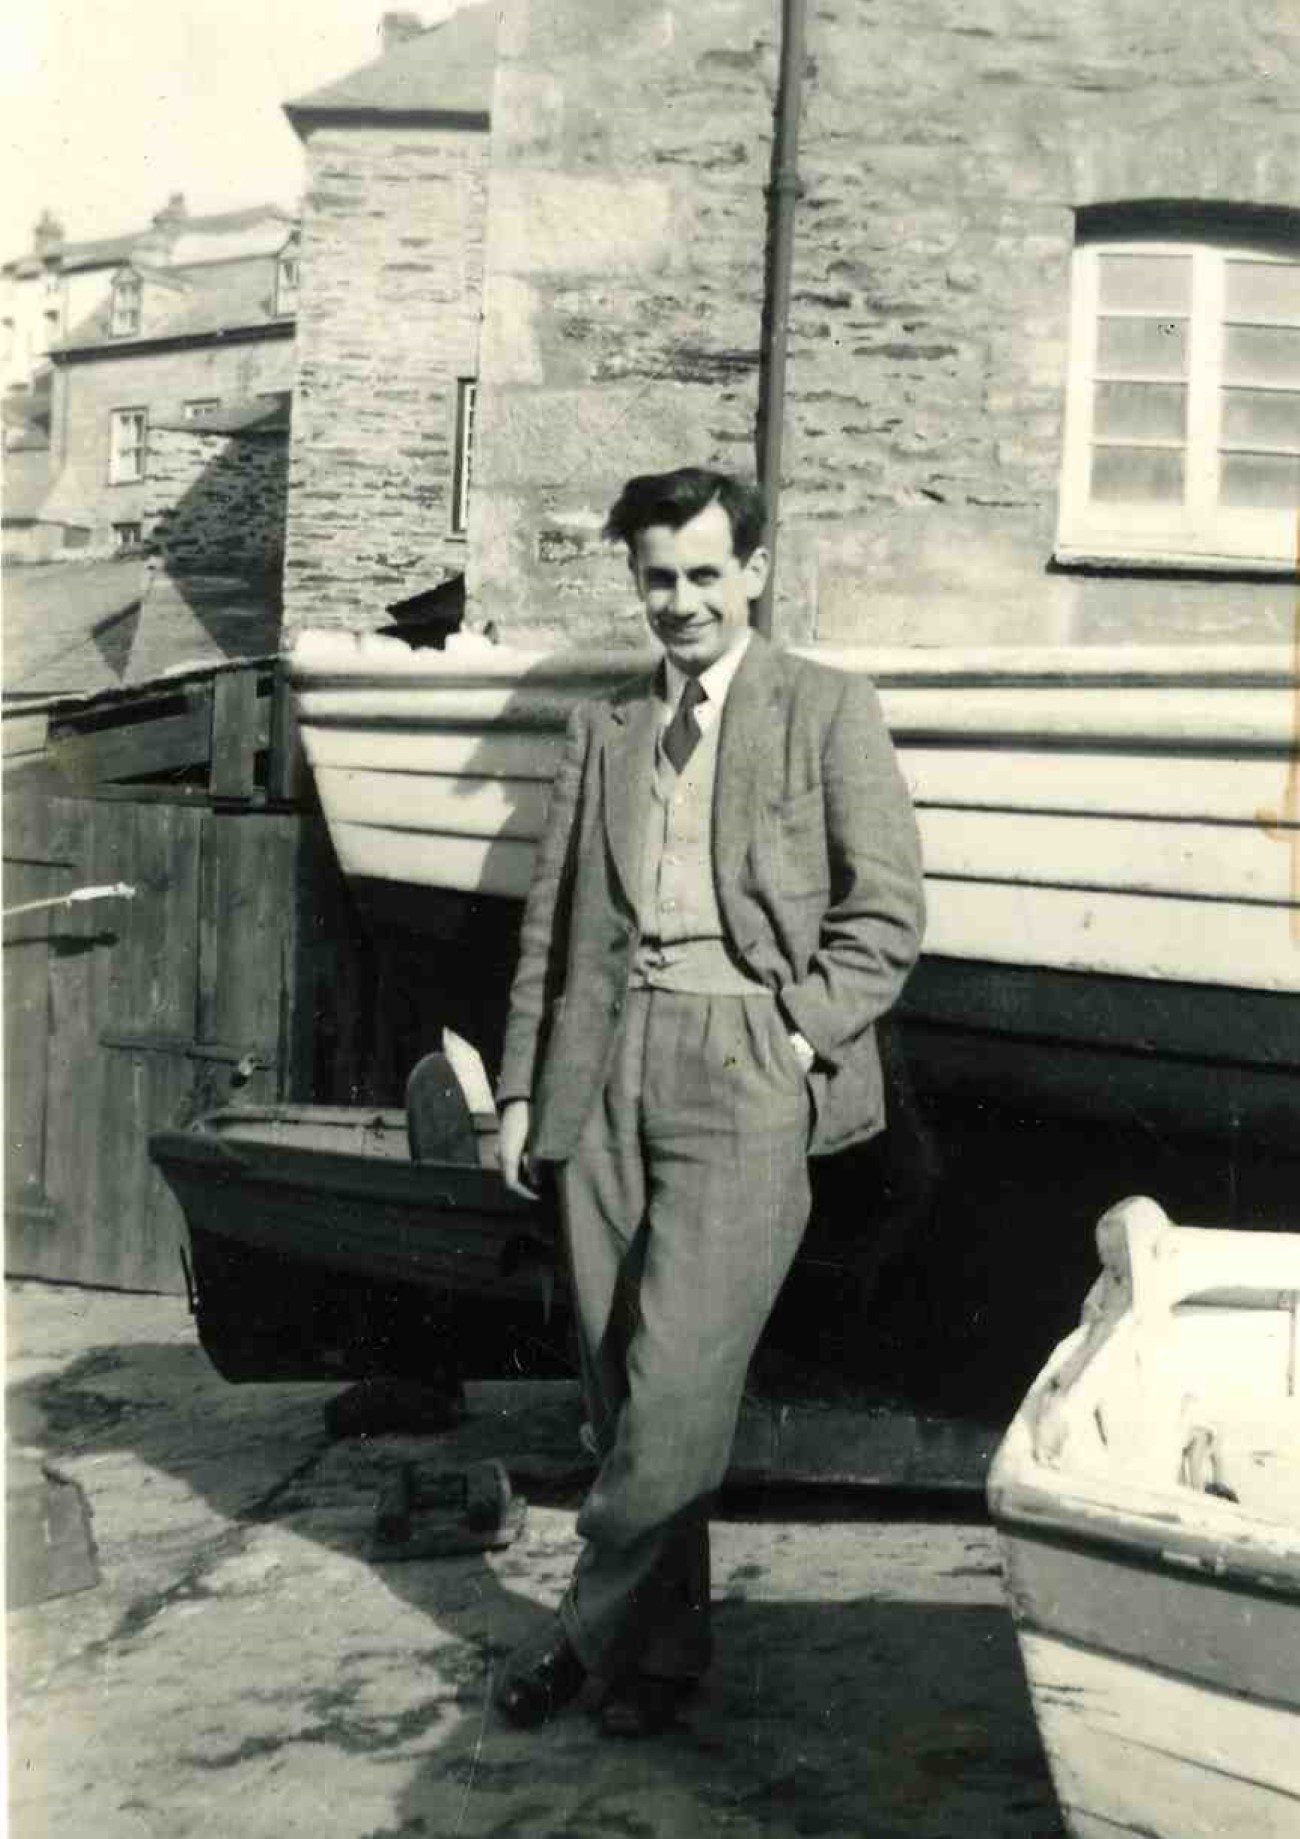 Jack Rowe in 1947